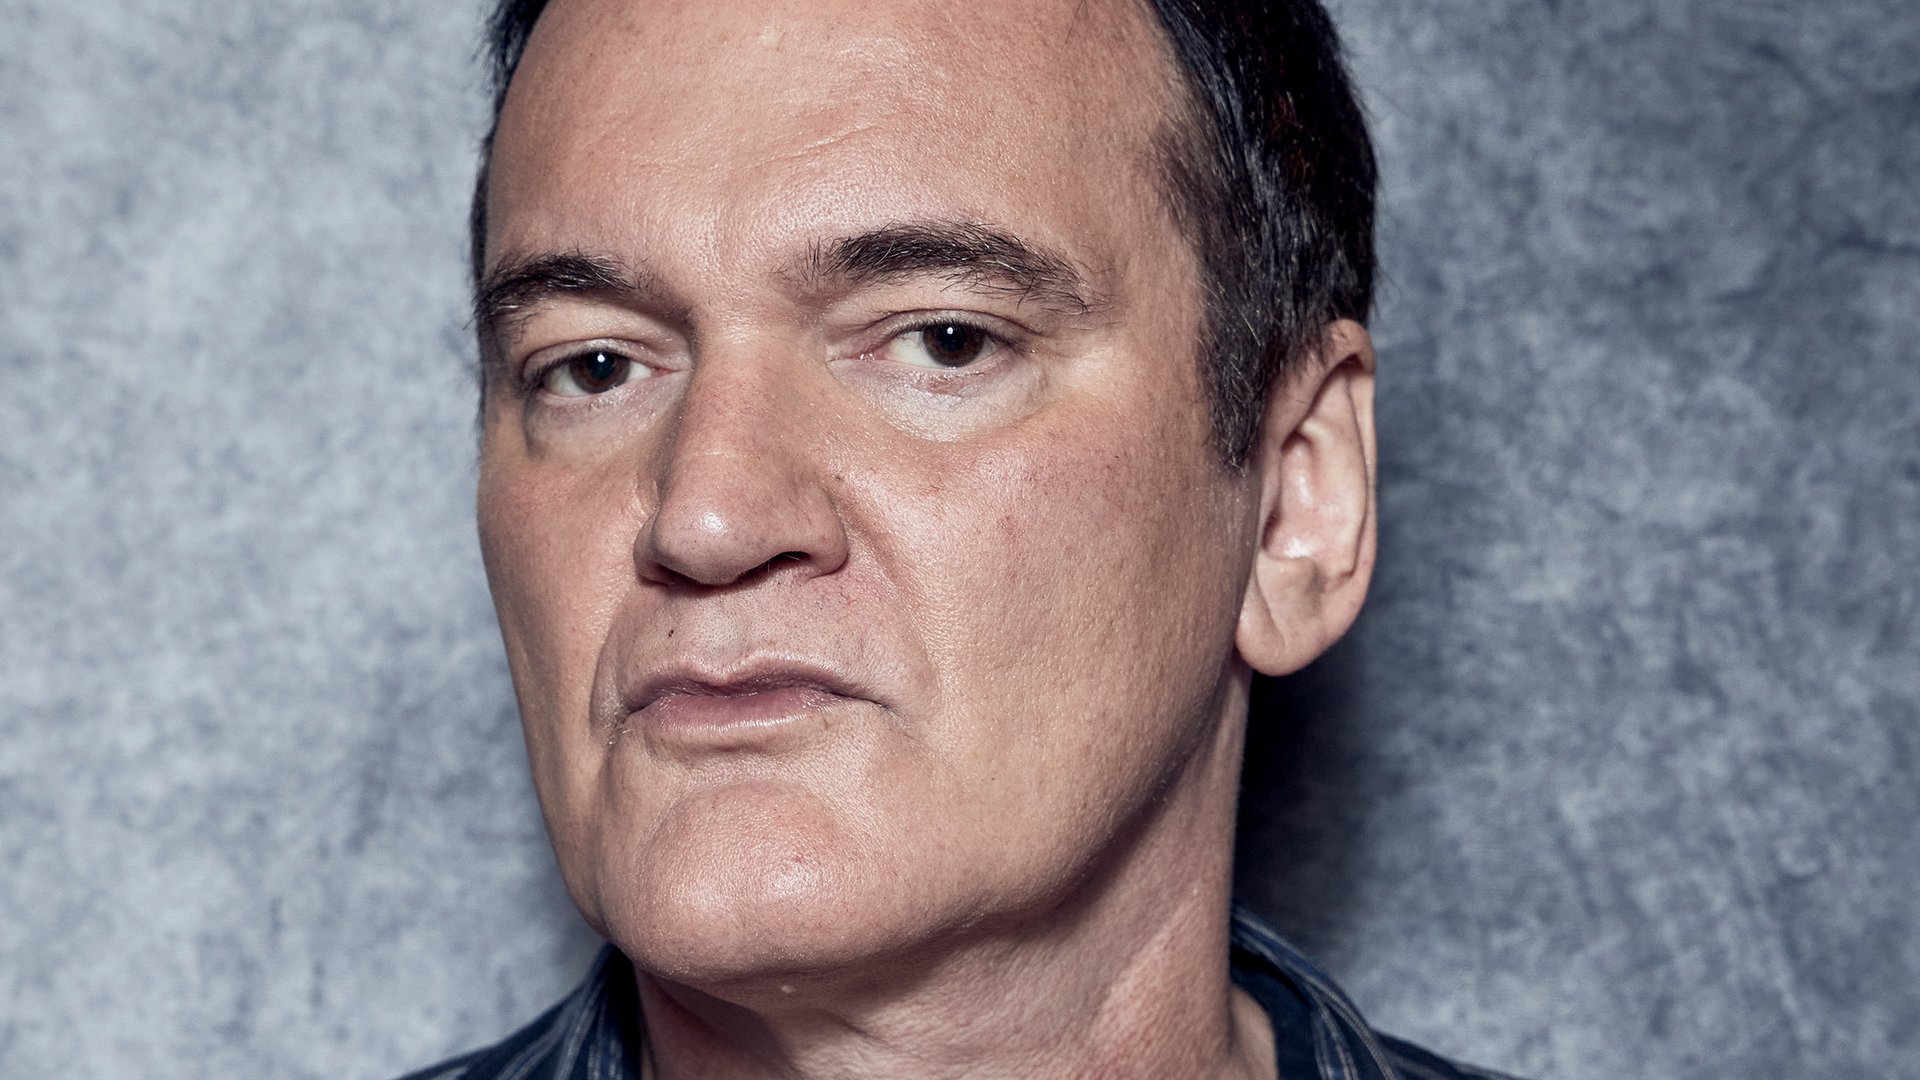 #Quentin Tarantino verrät: Das sind die 7 besten Filme aller Zeiten